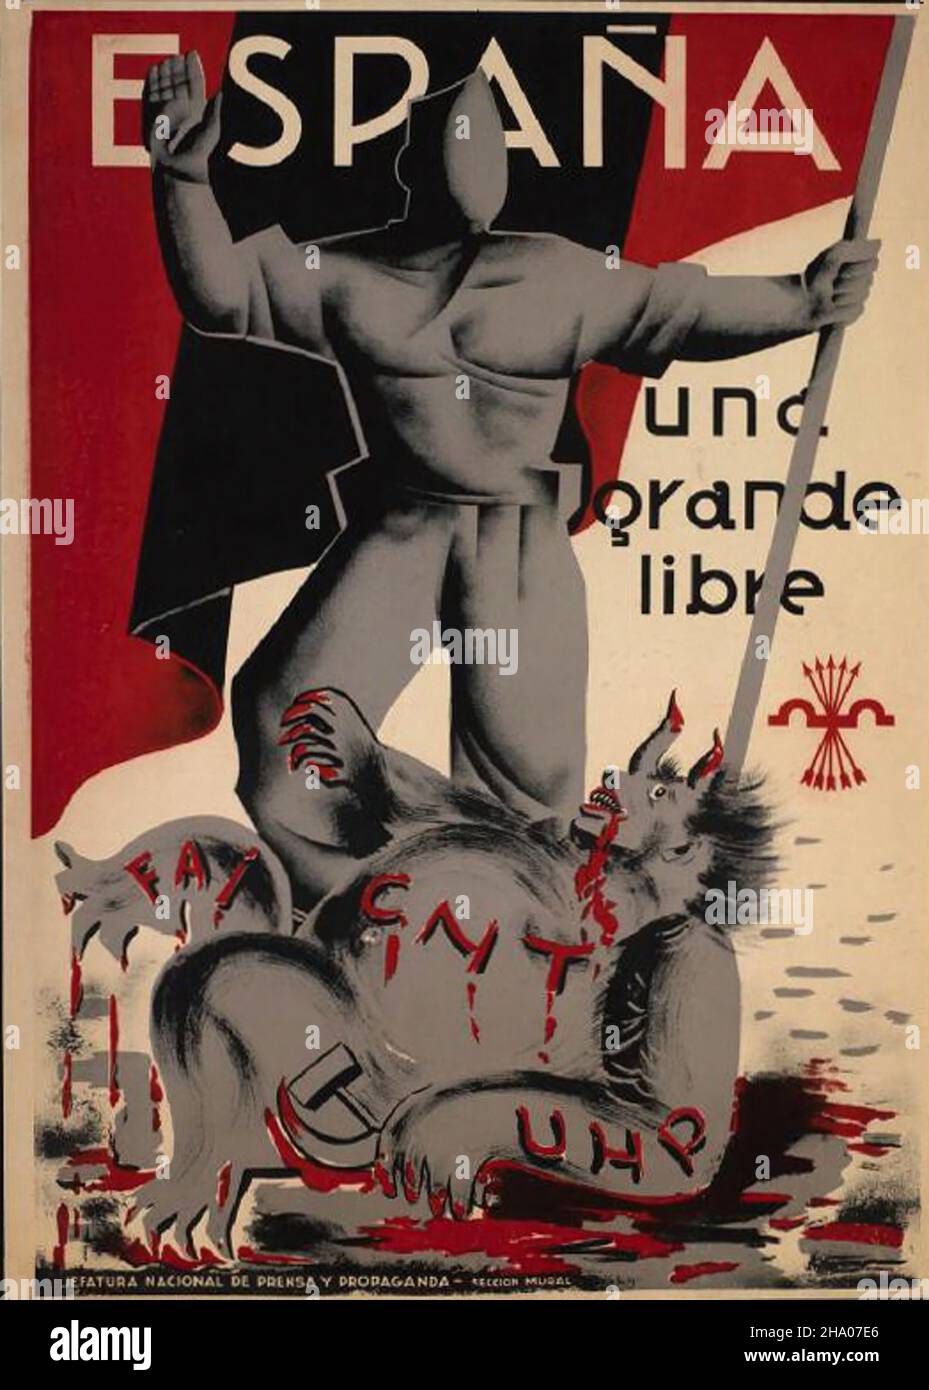 https://c8.alamy.com/comp/2HA07E6/espana-una-grande-libre-spanish-civil-war-guerra-civil-espaola-propaganda-poster-2HA07E6.jpg